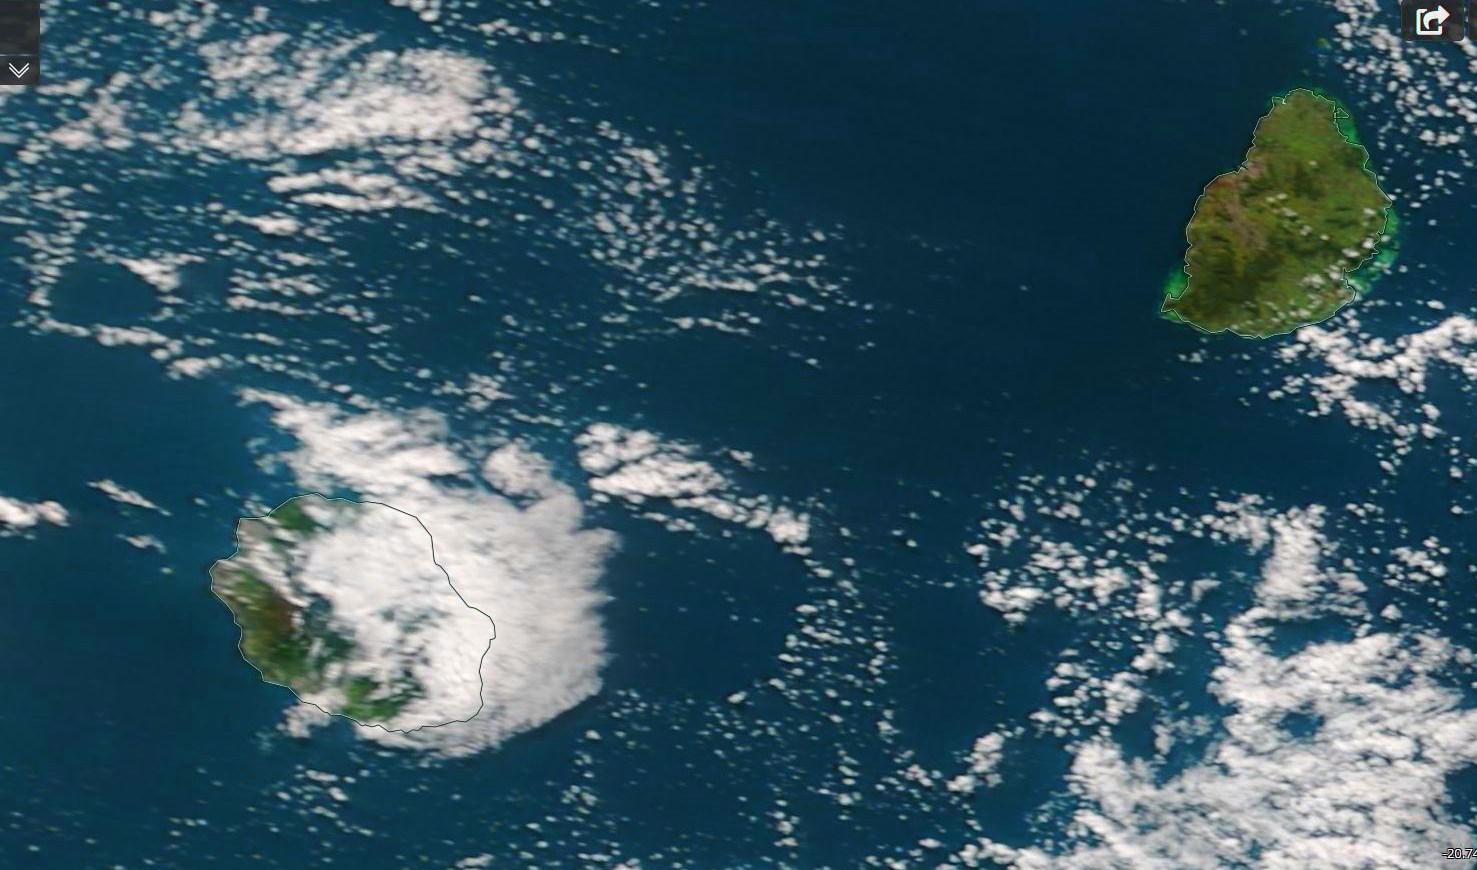 Le satellite Terra a capturé les iles soeurs(Réunion et Maurice) ce matin à 10heures. La Réunion était encore partagée en deux avec un temps d'alizé humide sur la moitié est alors que le soleil réchauffait l'atmosphère sur la moitié ouest. Beau temps à Maurice. Crédit image: NASA US